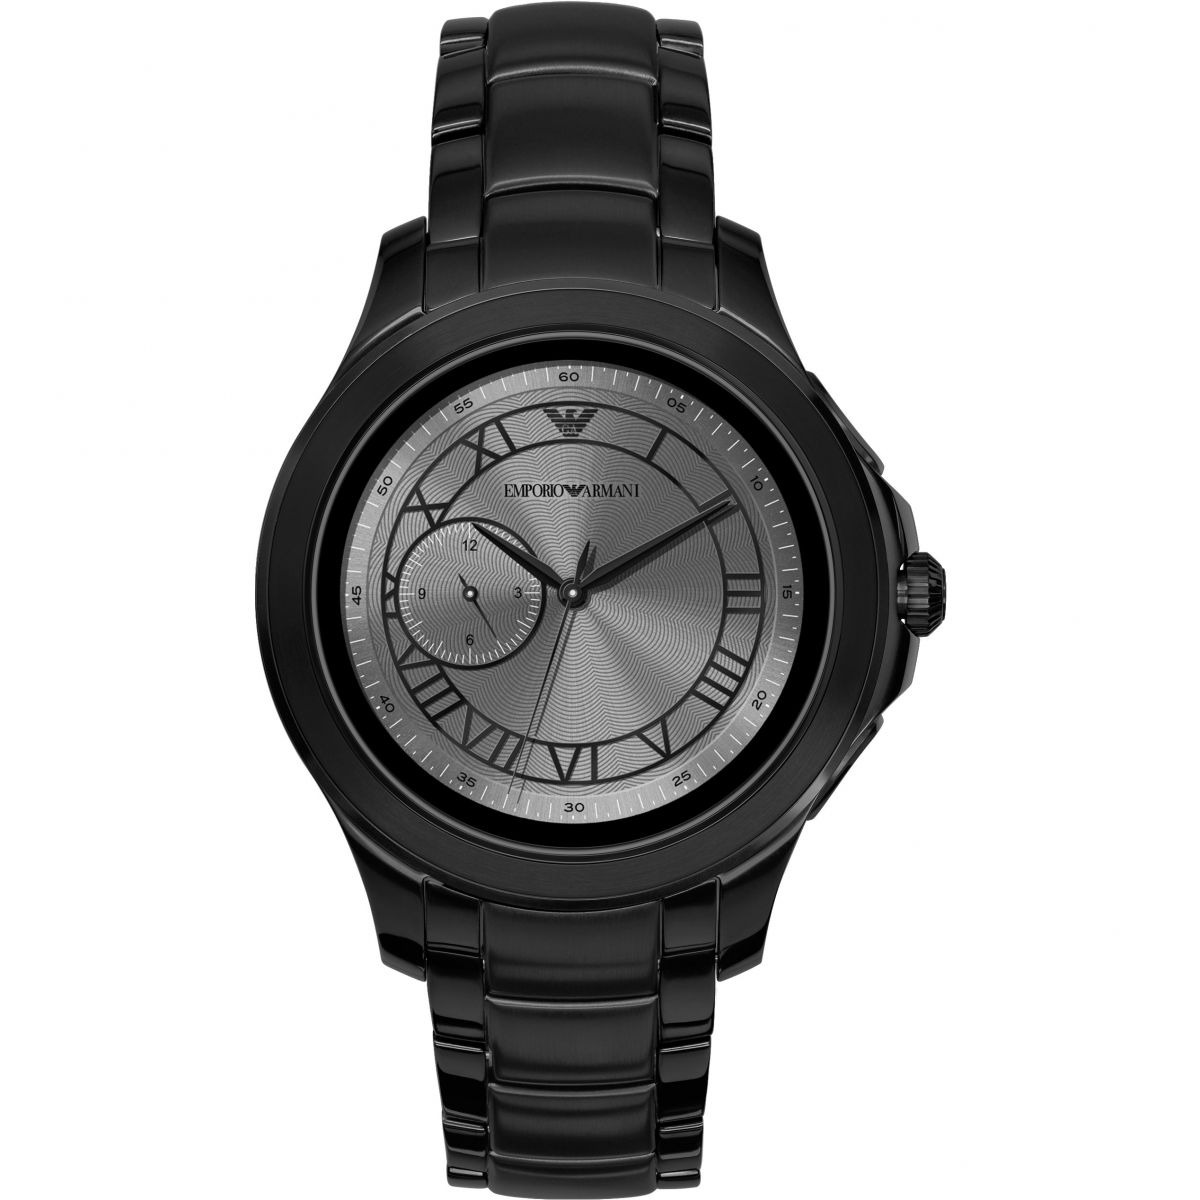 Emporio Armani - Man Smartwatch Black Watch Shop GOOFASH